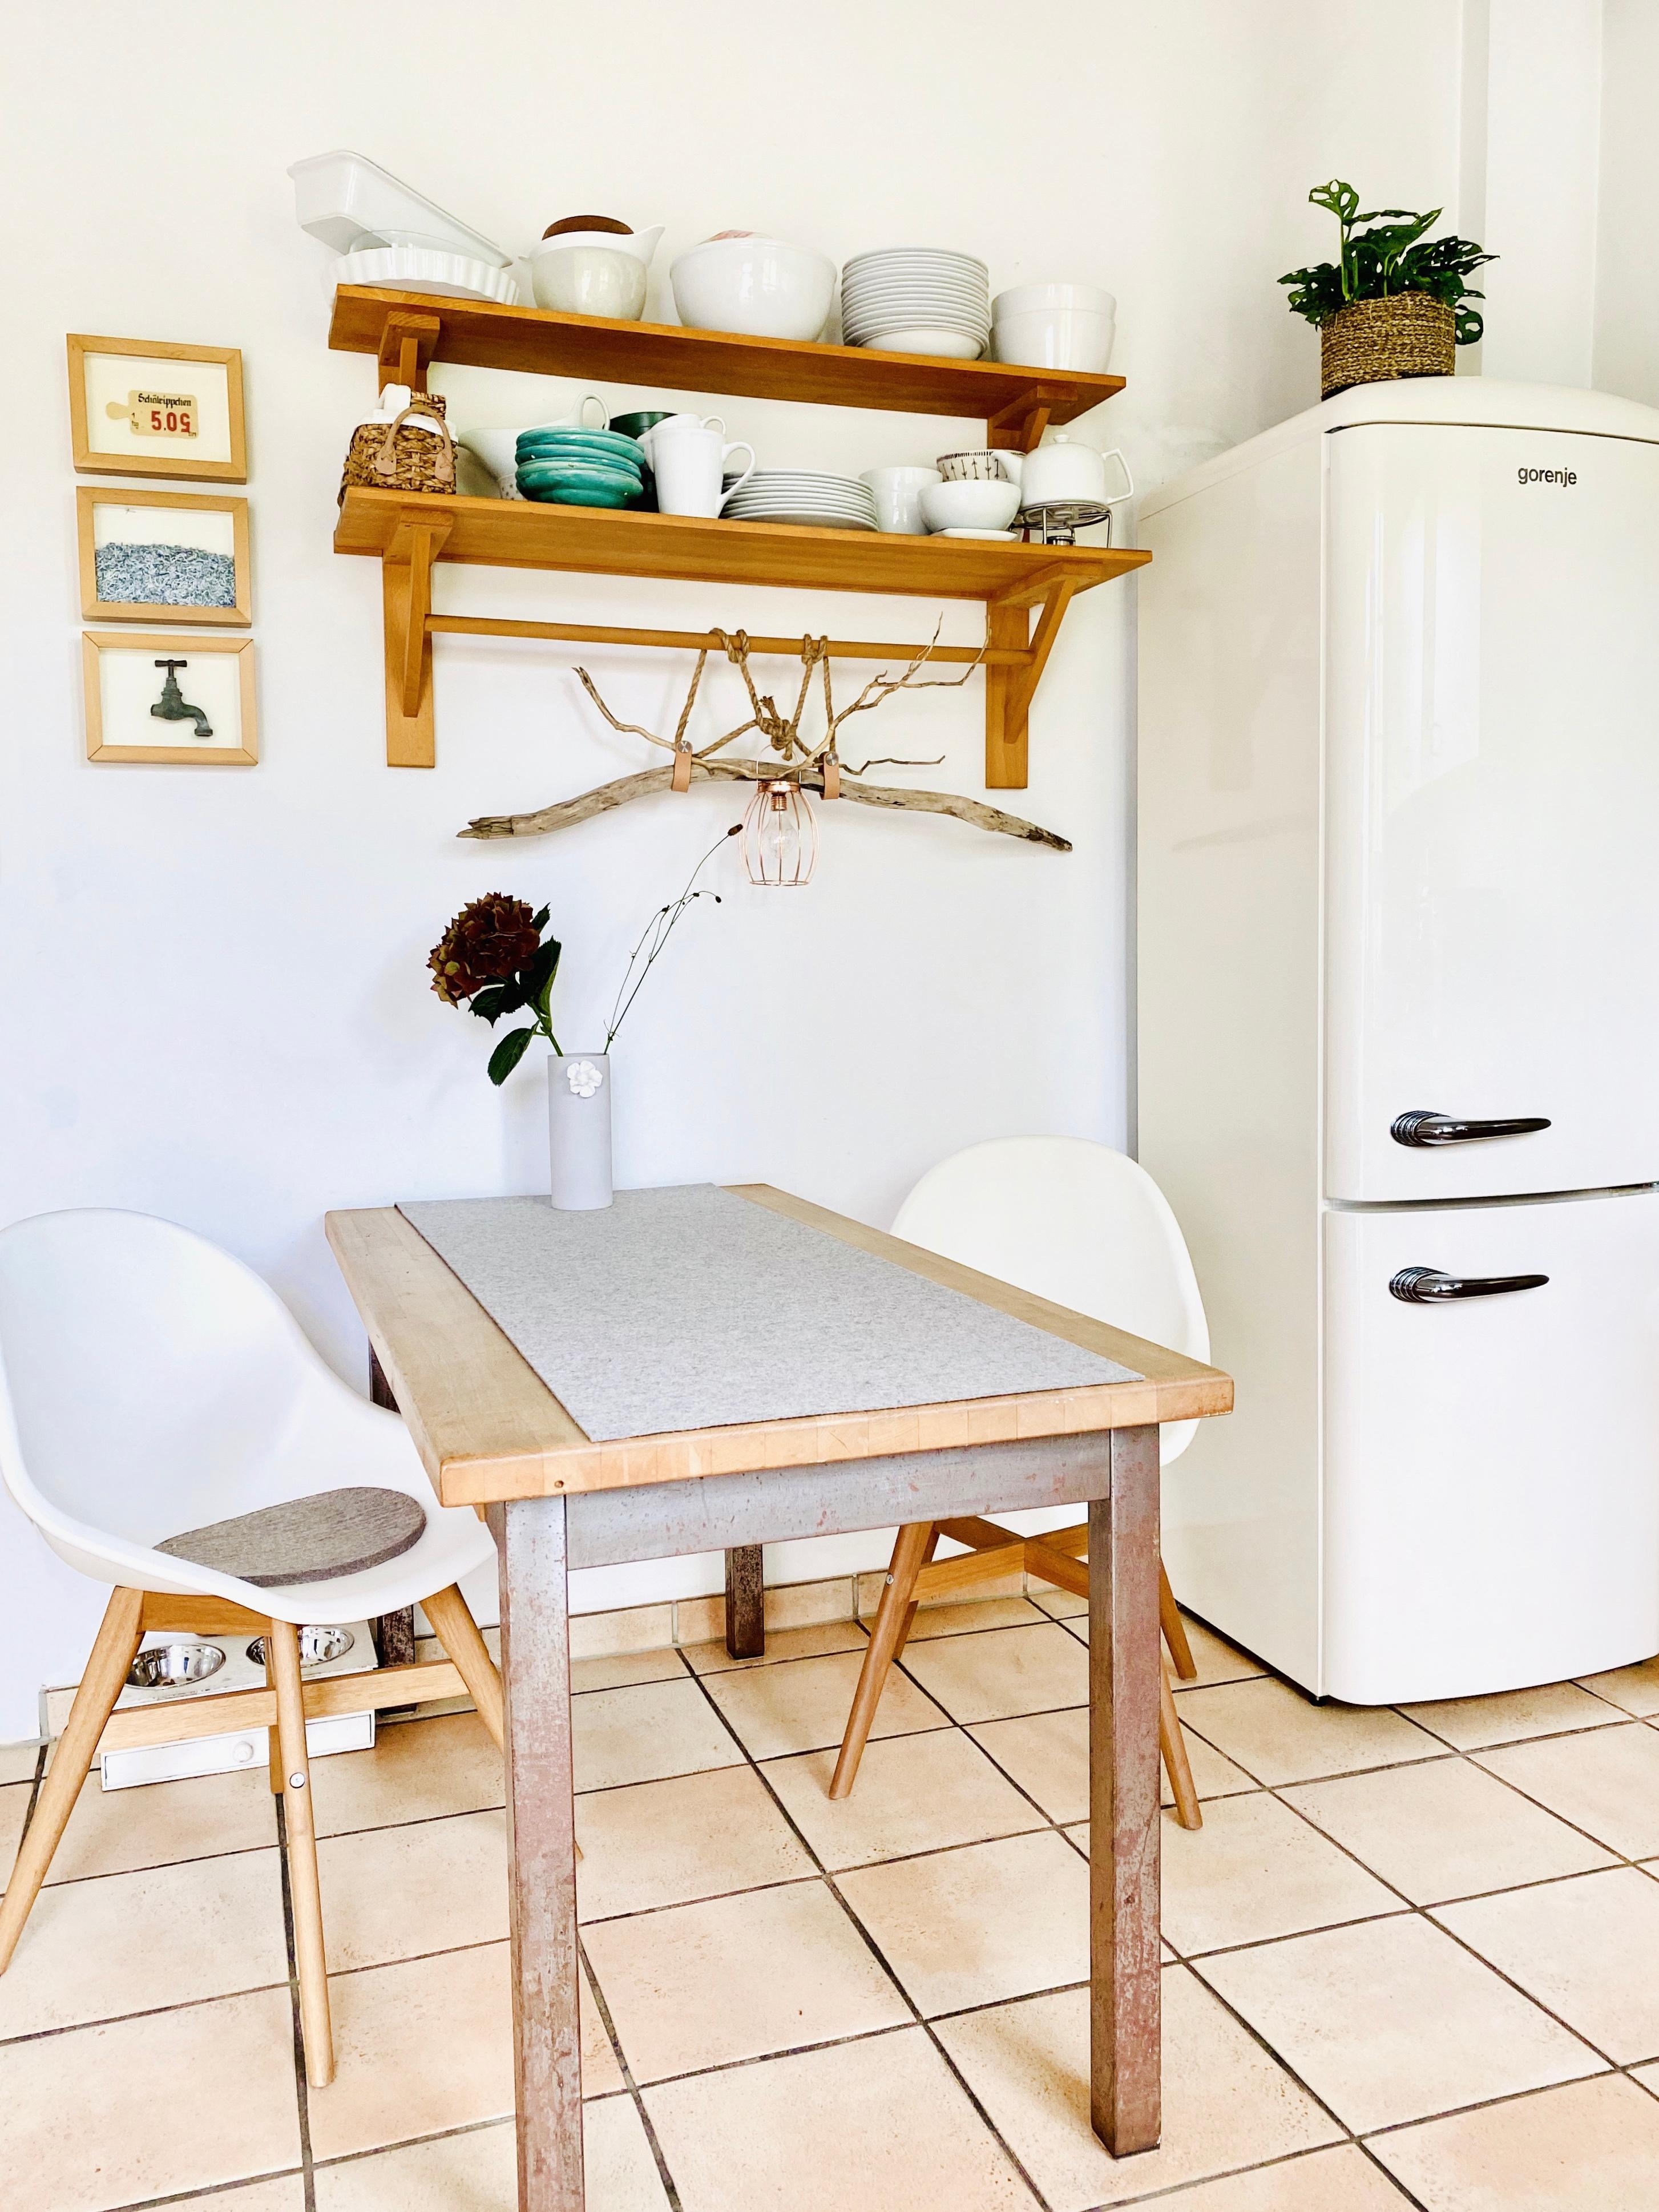 fARBsPIEL IN DER KücHE
Grau, Beige, Weiß und natürlich Holz ...
#kitchendetails #küche #holzregal #zuhause #wohlfühlen